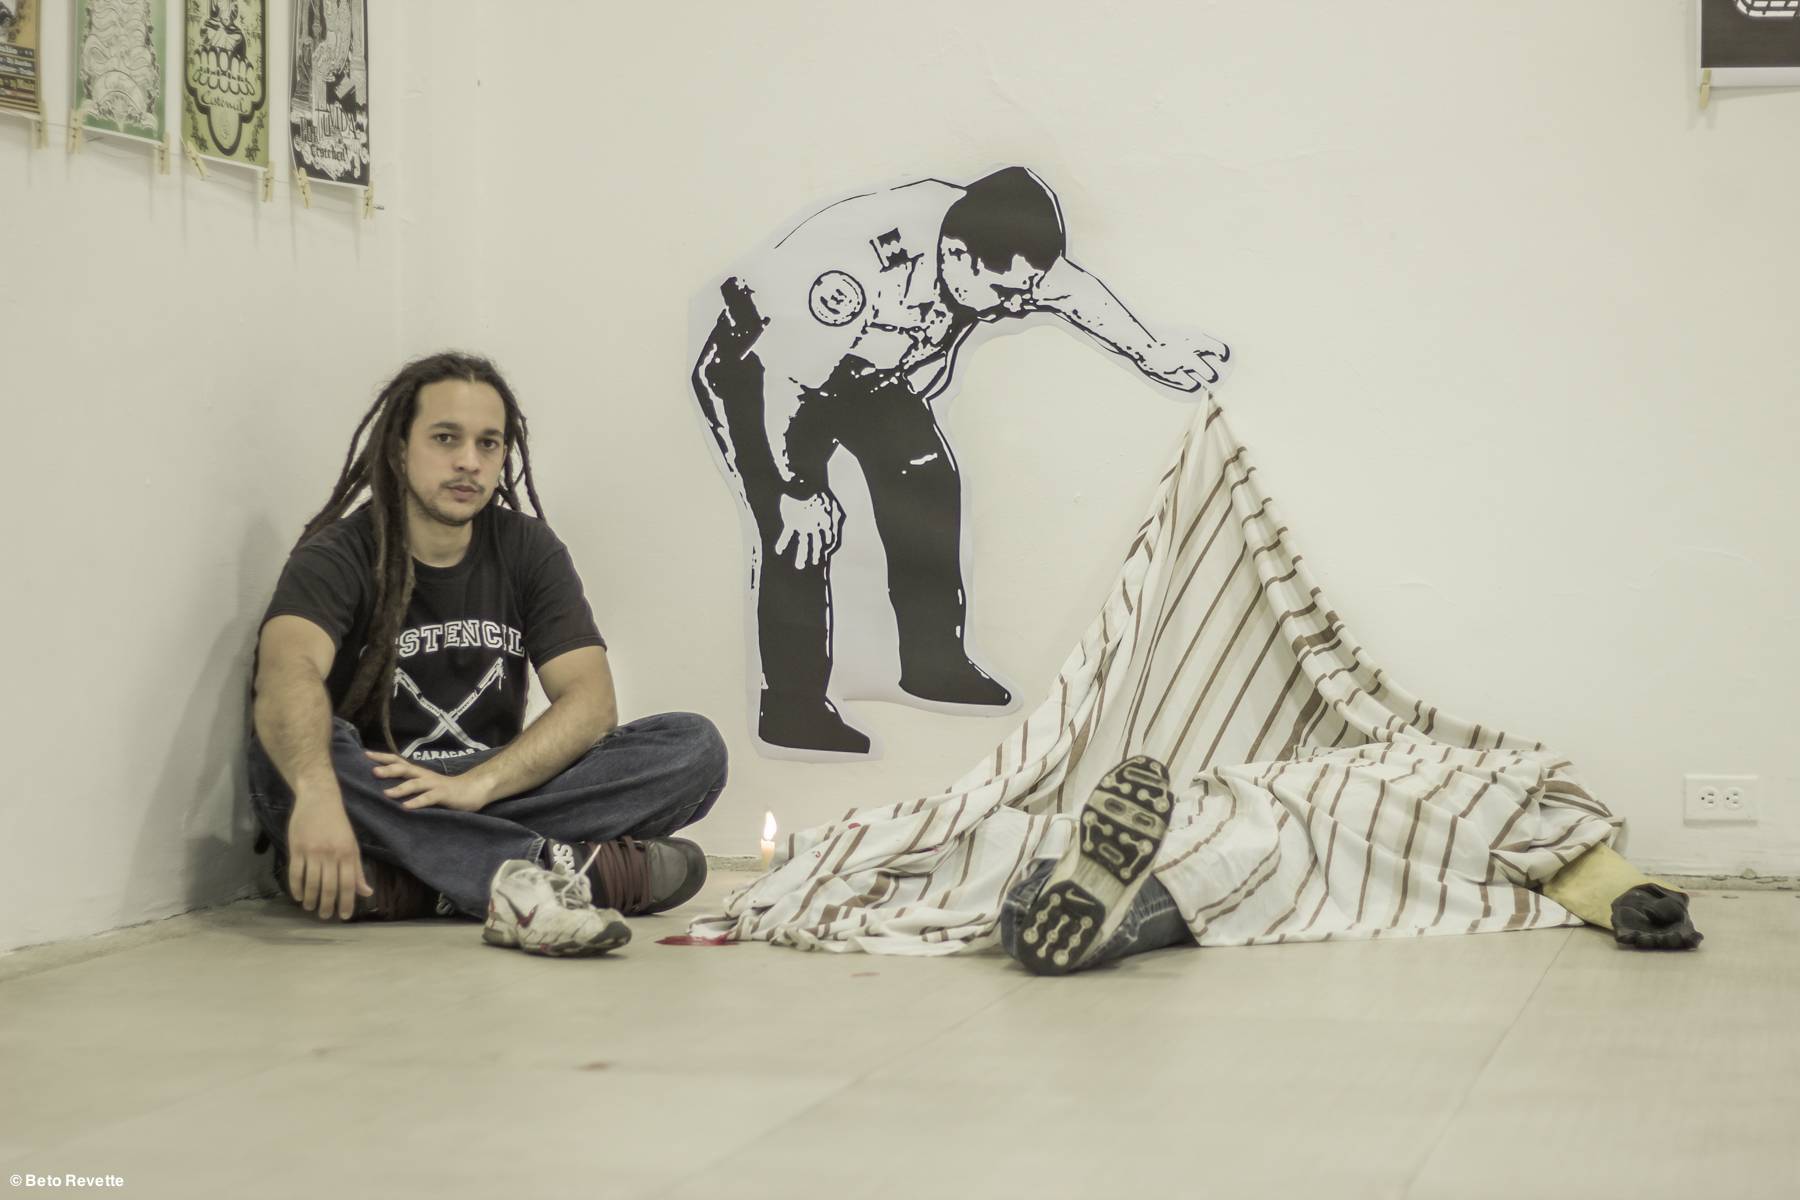 "Recuerdo de Caracas" de Alexander Siniscalchi, conocido como “El Ale” y Darío Bayley